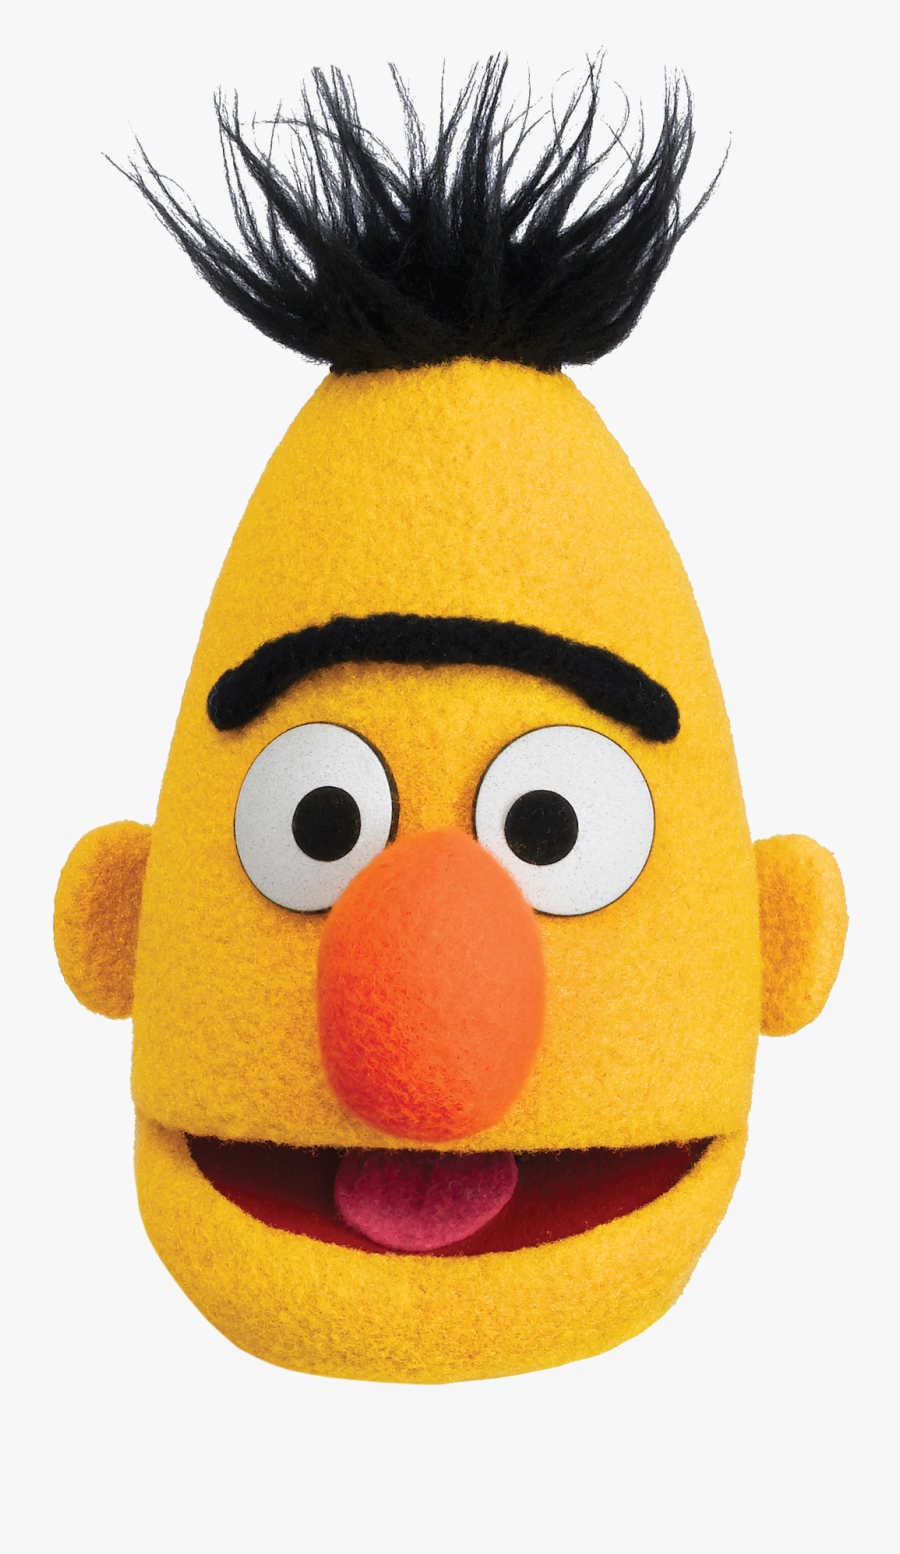 Bert Head - Bert From Sesame Street, Transparent Clipart